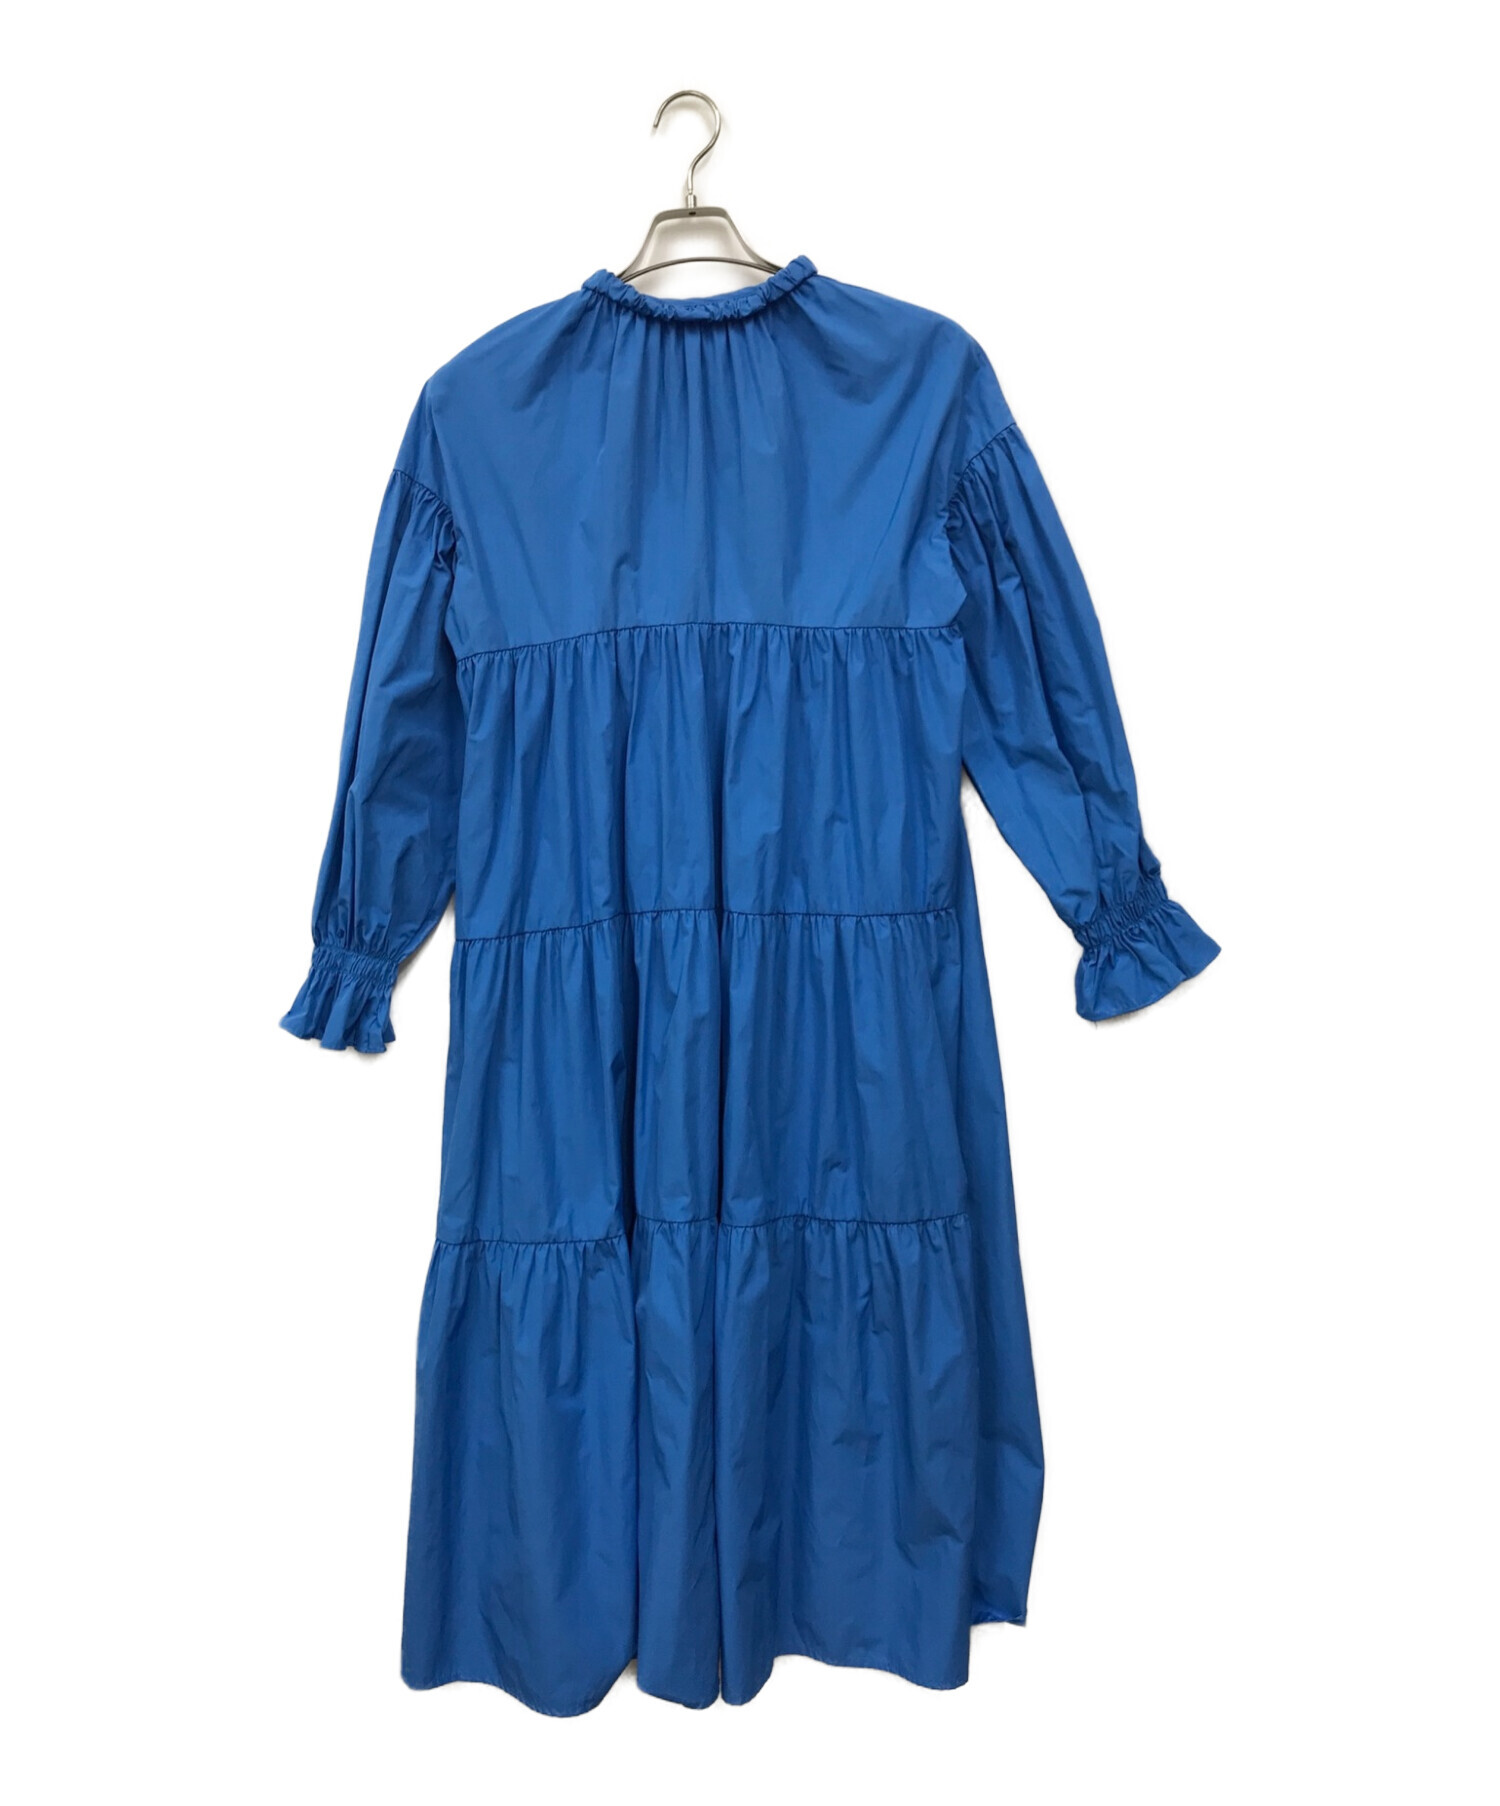 machatt (マチャット) リボンバックティアードドレス ブルー サイズ:FREE